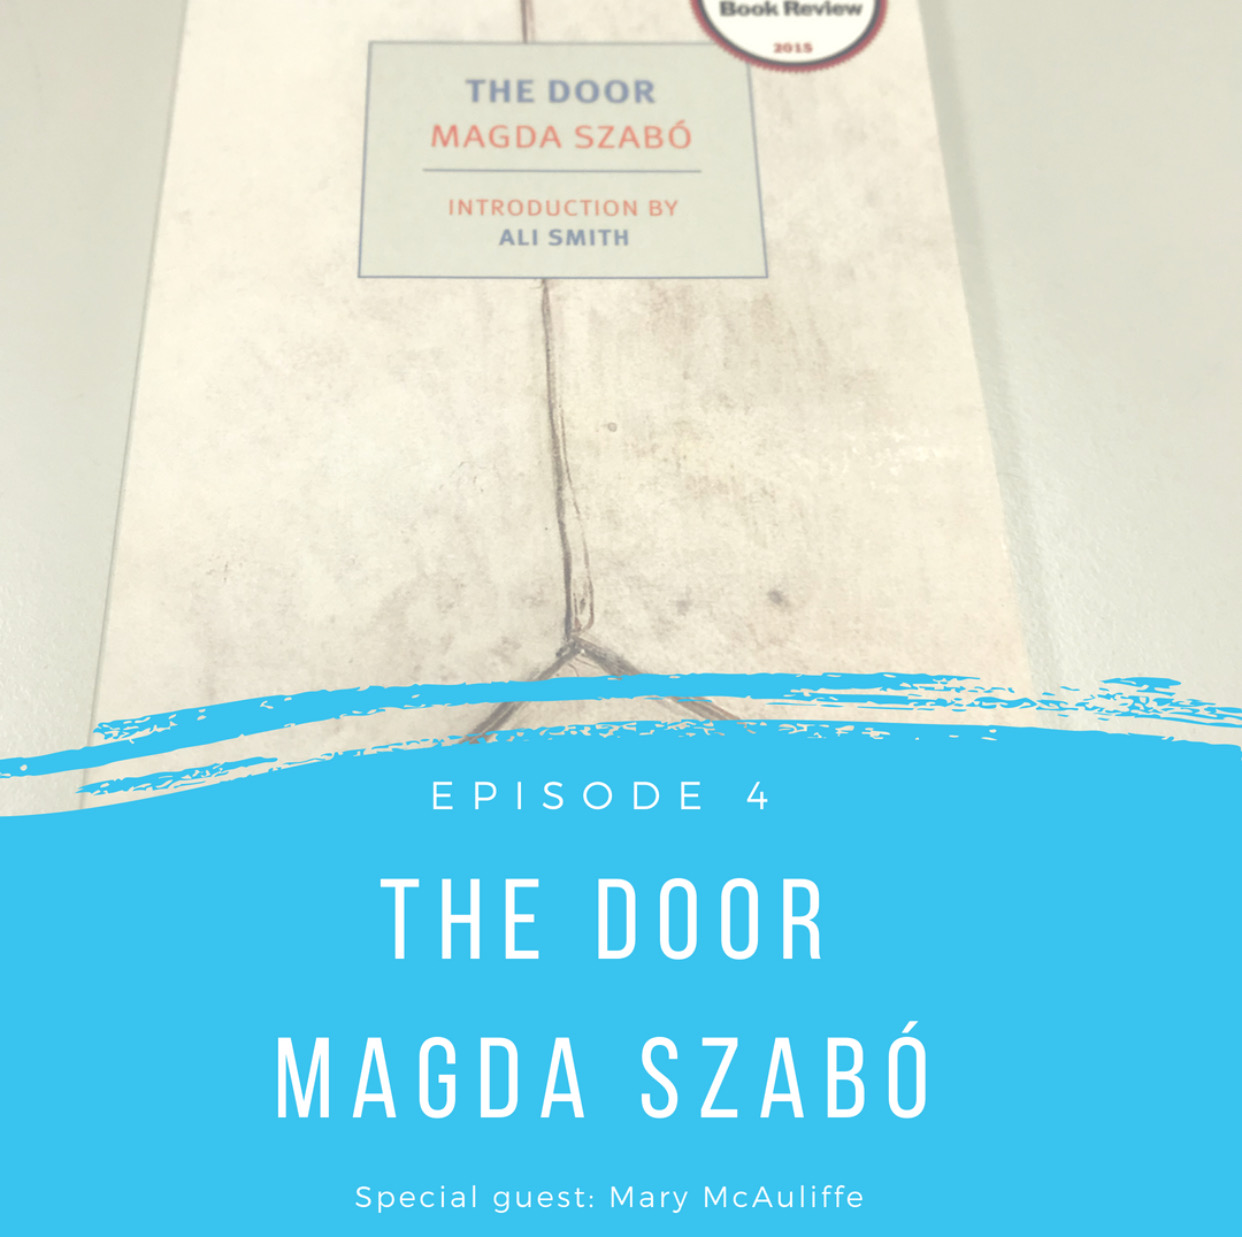 Episode 4 - The Door